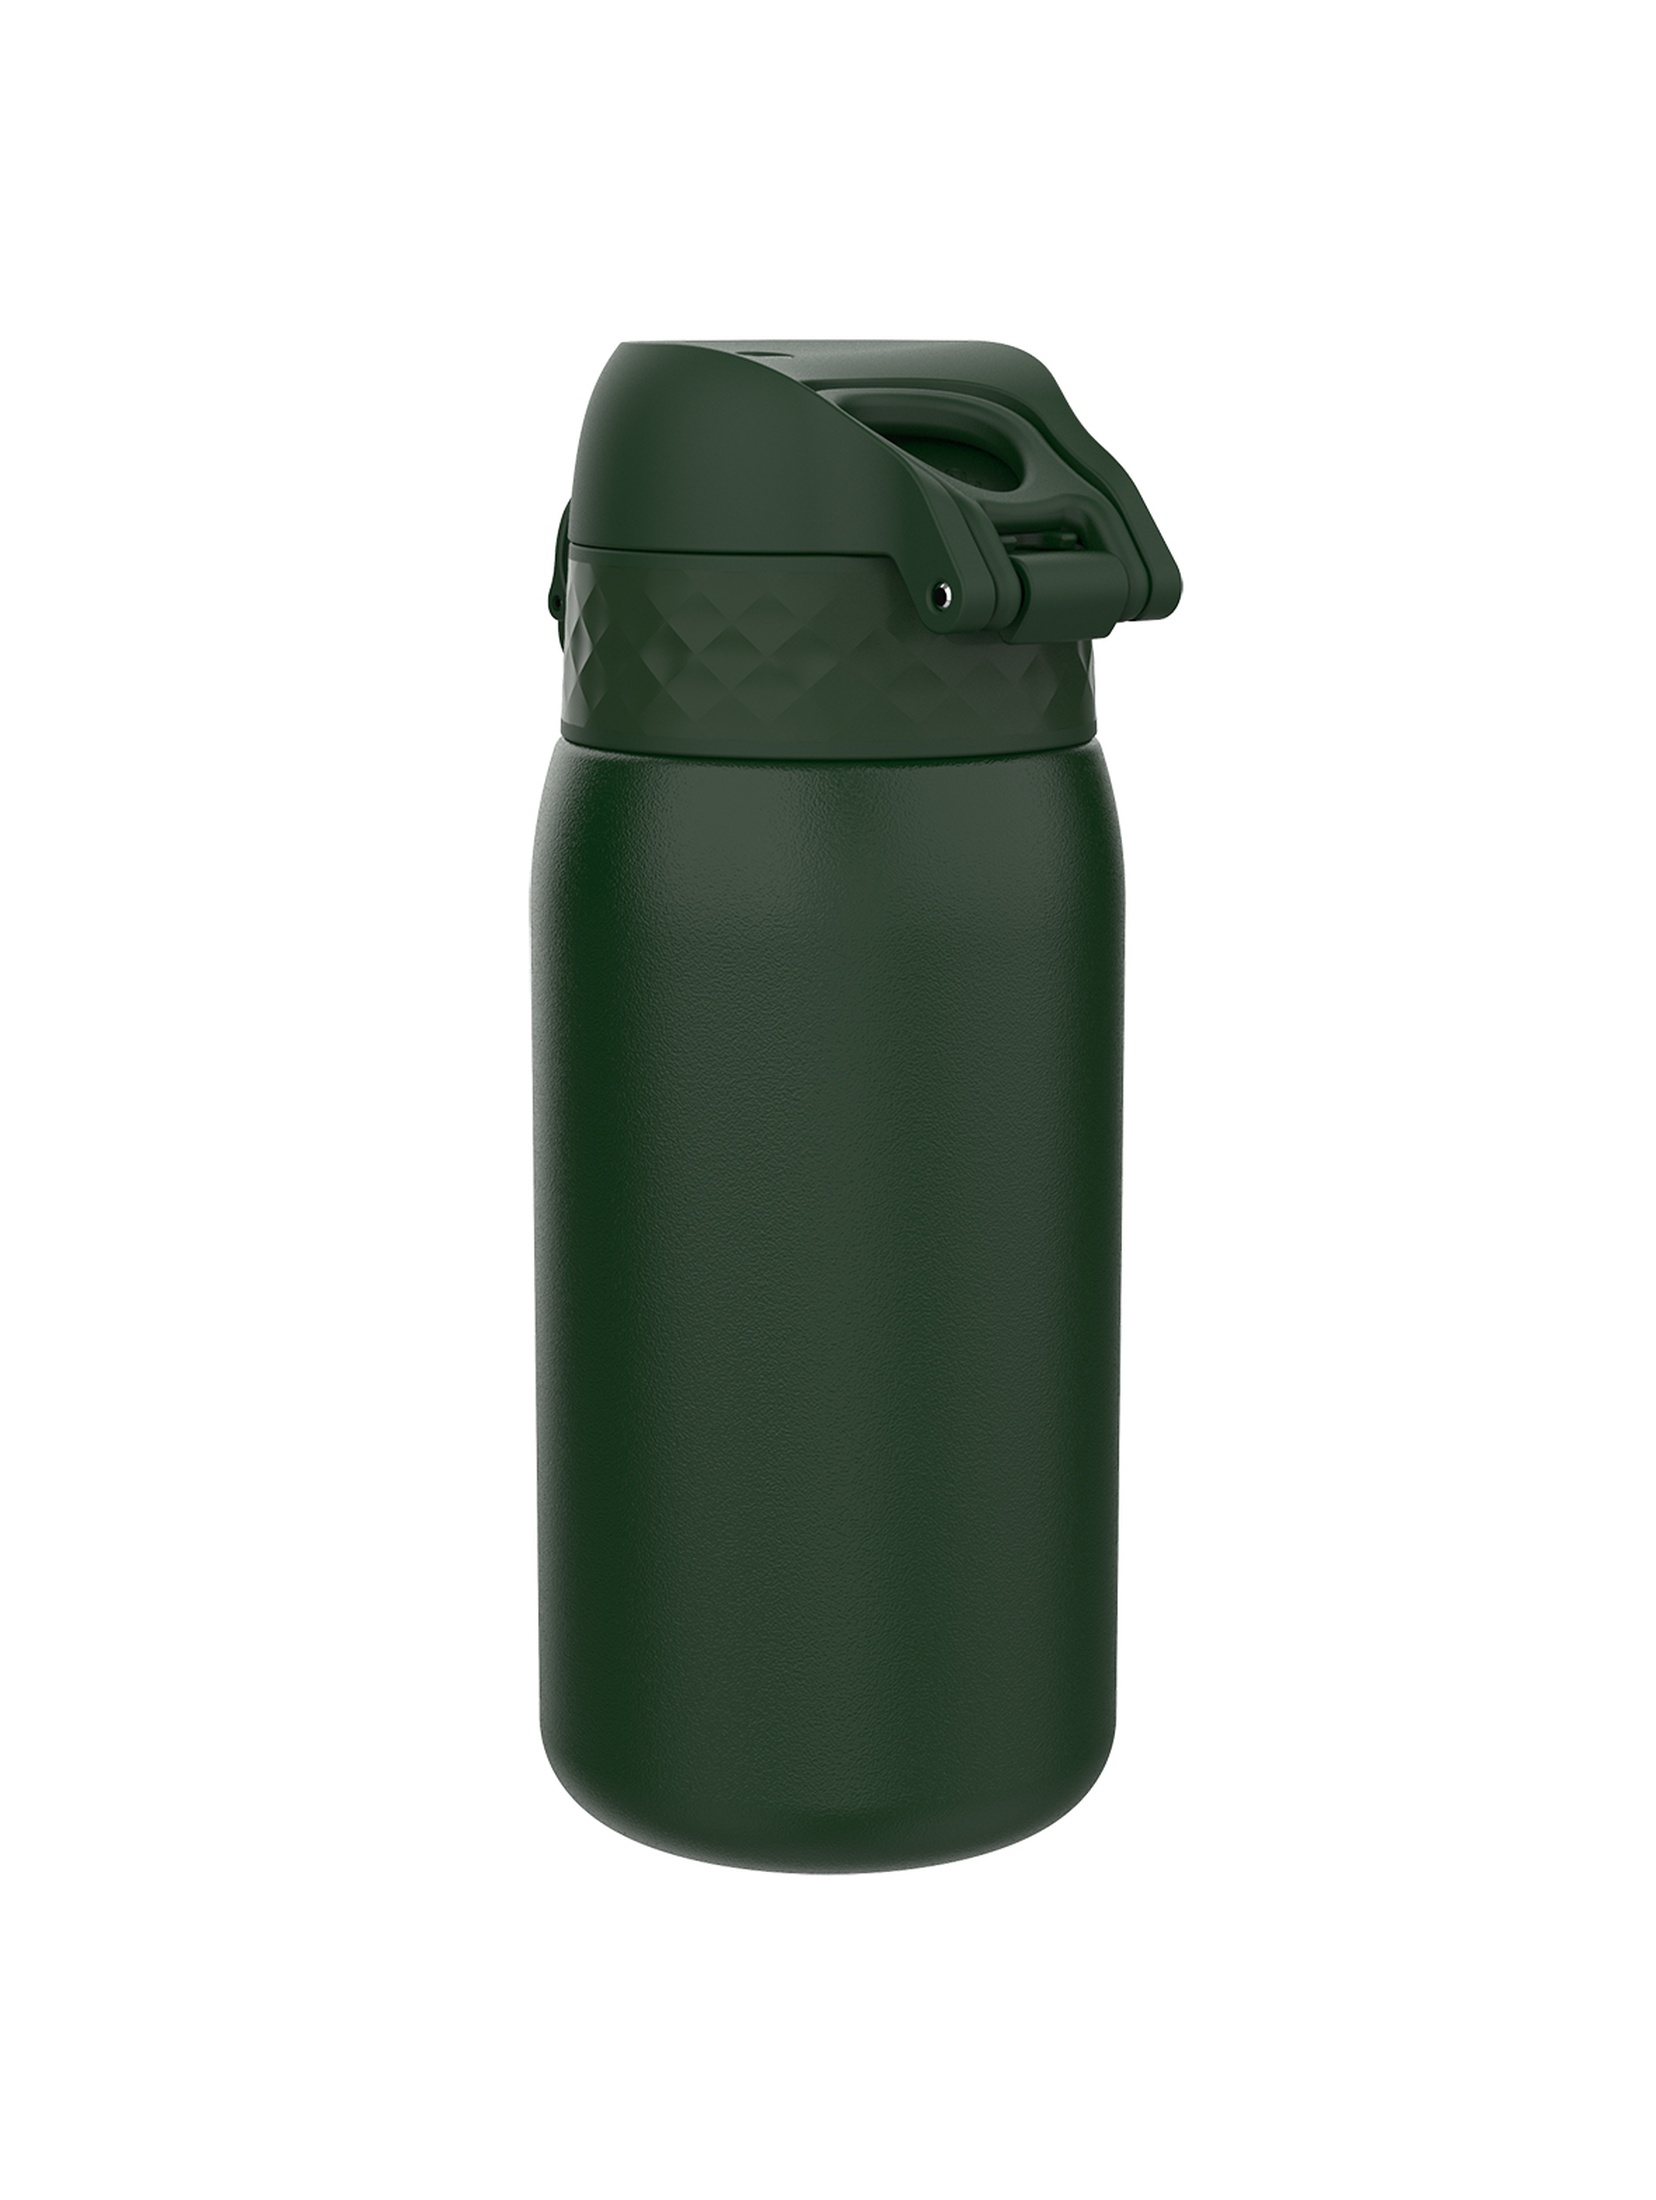 Butelka na wodę ION8 Single Wall Dark Green 400ml - zielona